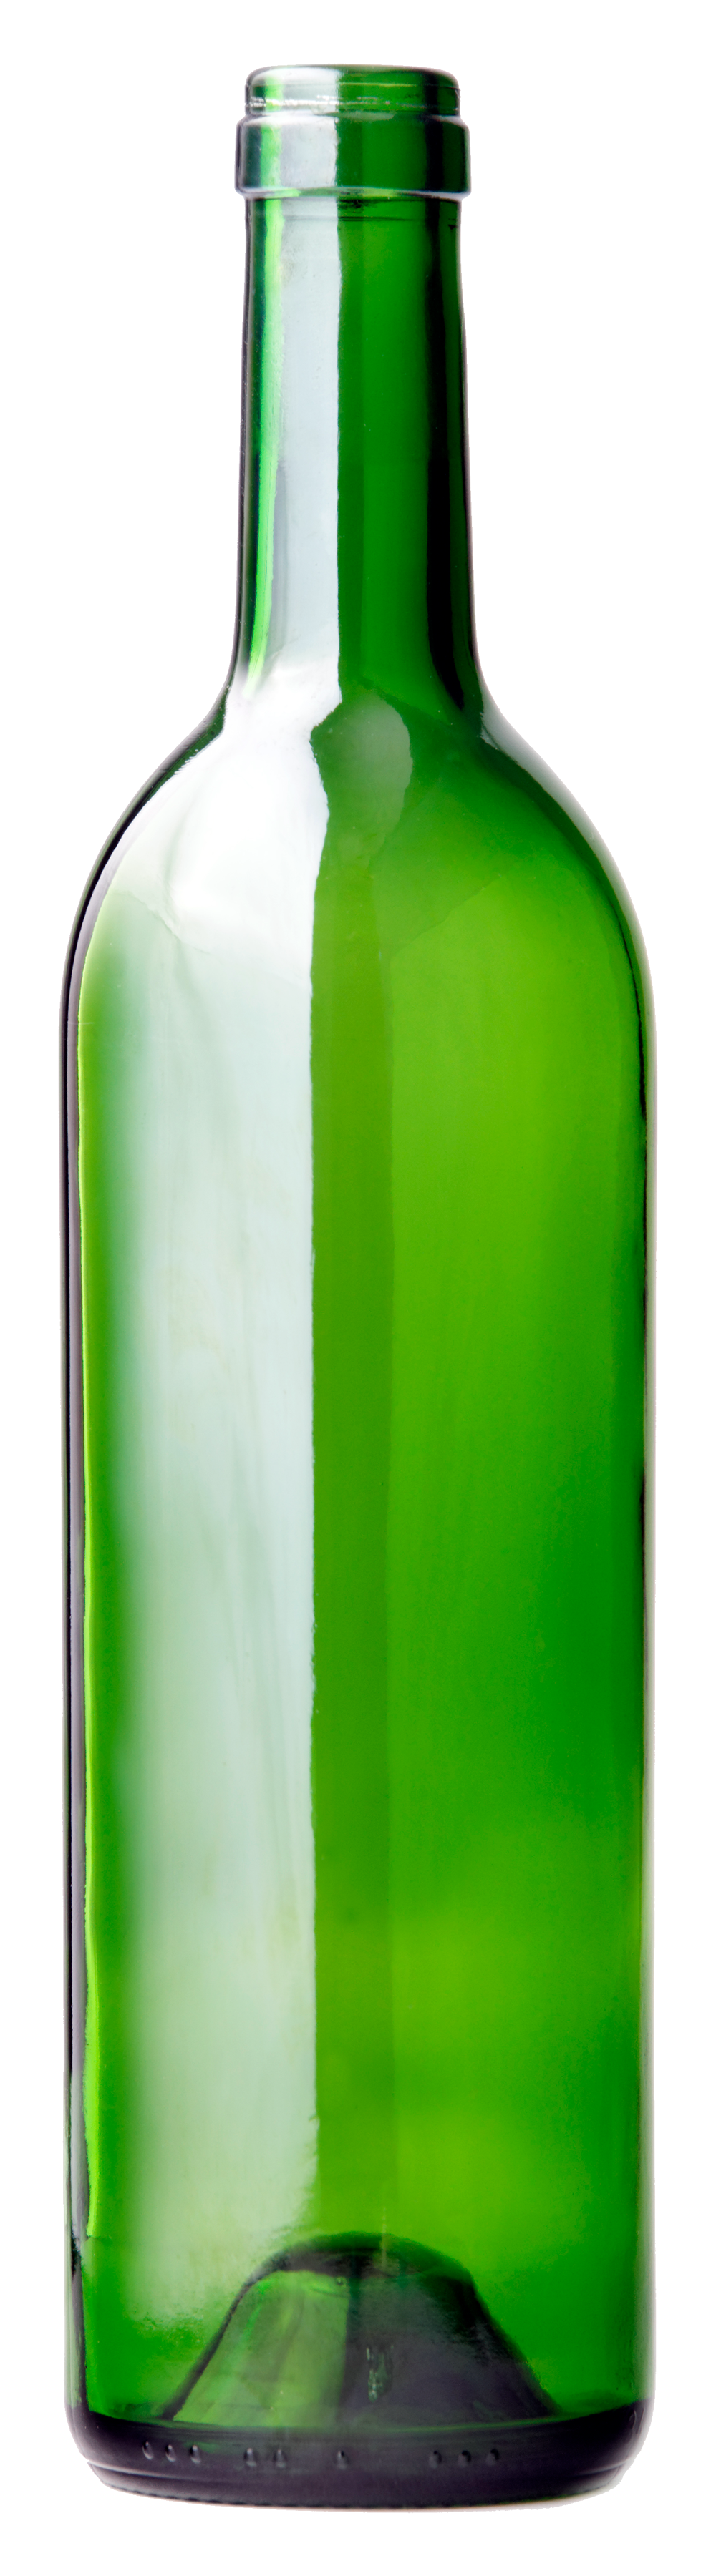 Yeşil cam şarap şişesi